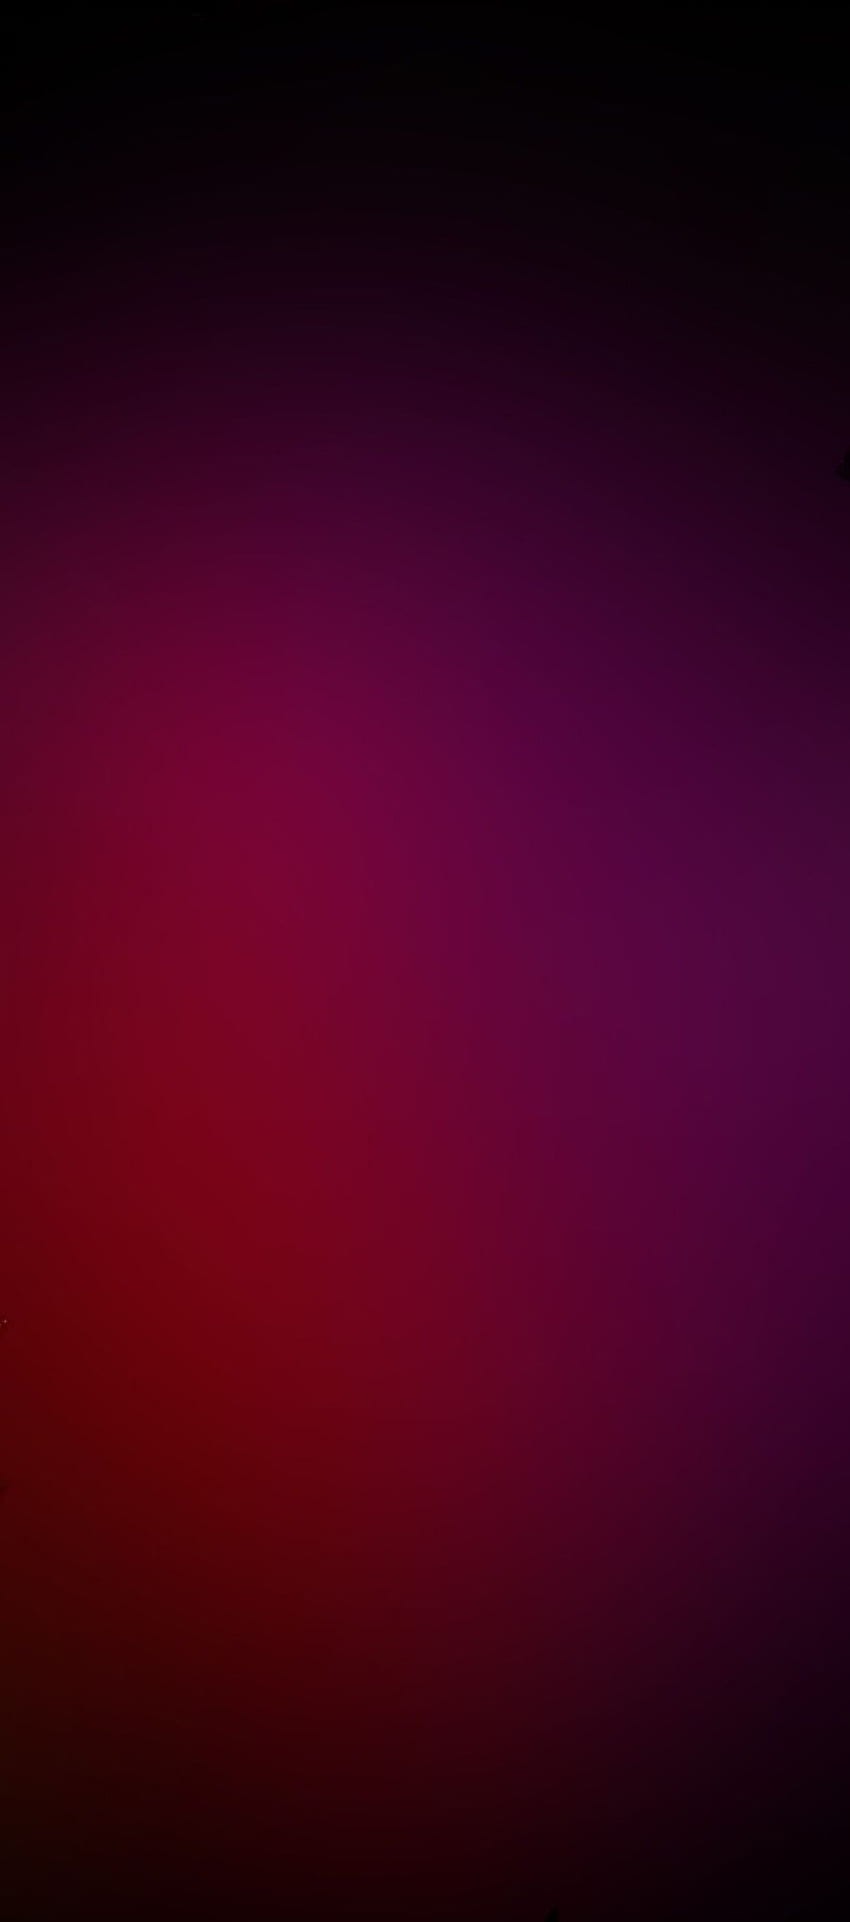 Rojo, limpio, galaxia, color, abstracto, arte digital, s8, paredes, Samsung, galaxy s8. Galaxy s8, Oneplus, S8, Borgoña Resumen fondo de pantalla del teléfono